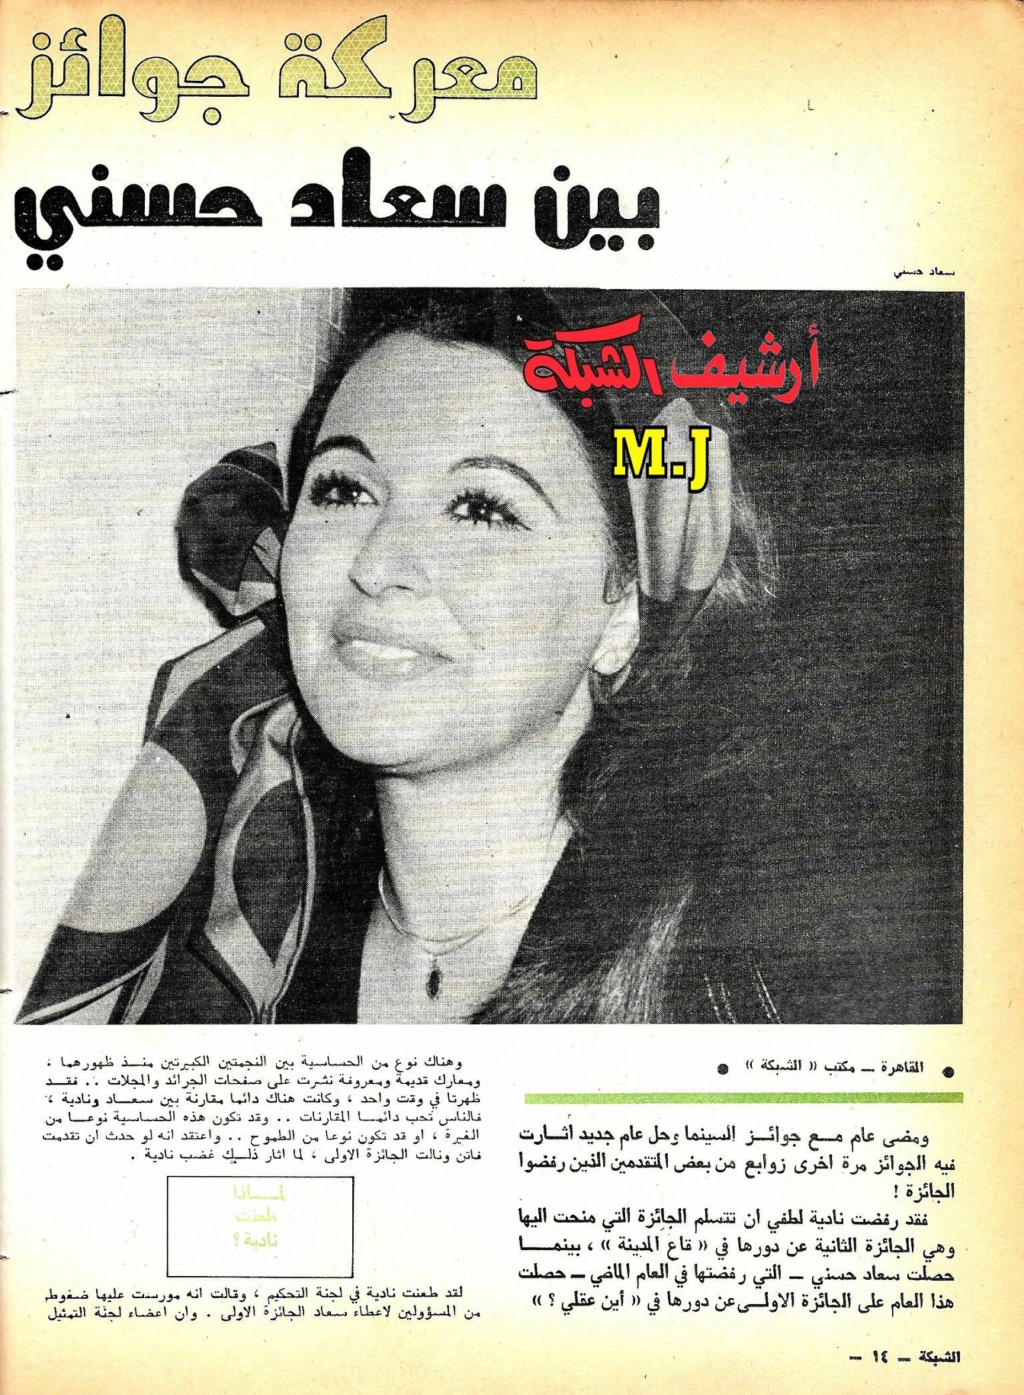 1975 - مقال صحفي : معركة جوائز السينما .. بين سعاد حسني ونادية لطفي 1975 م 1420